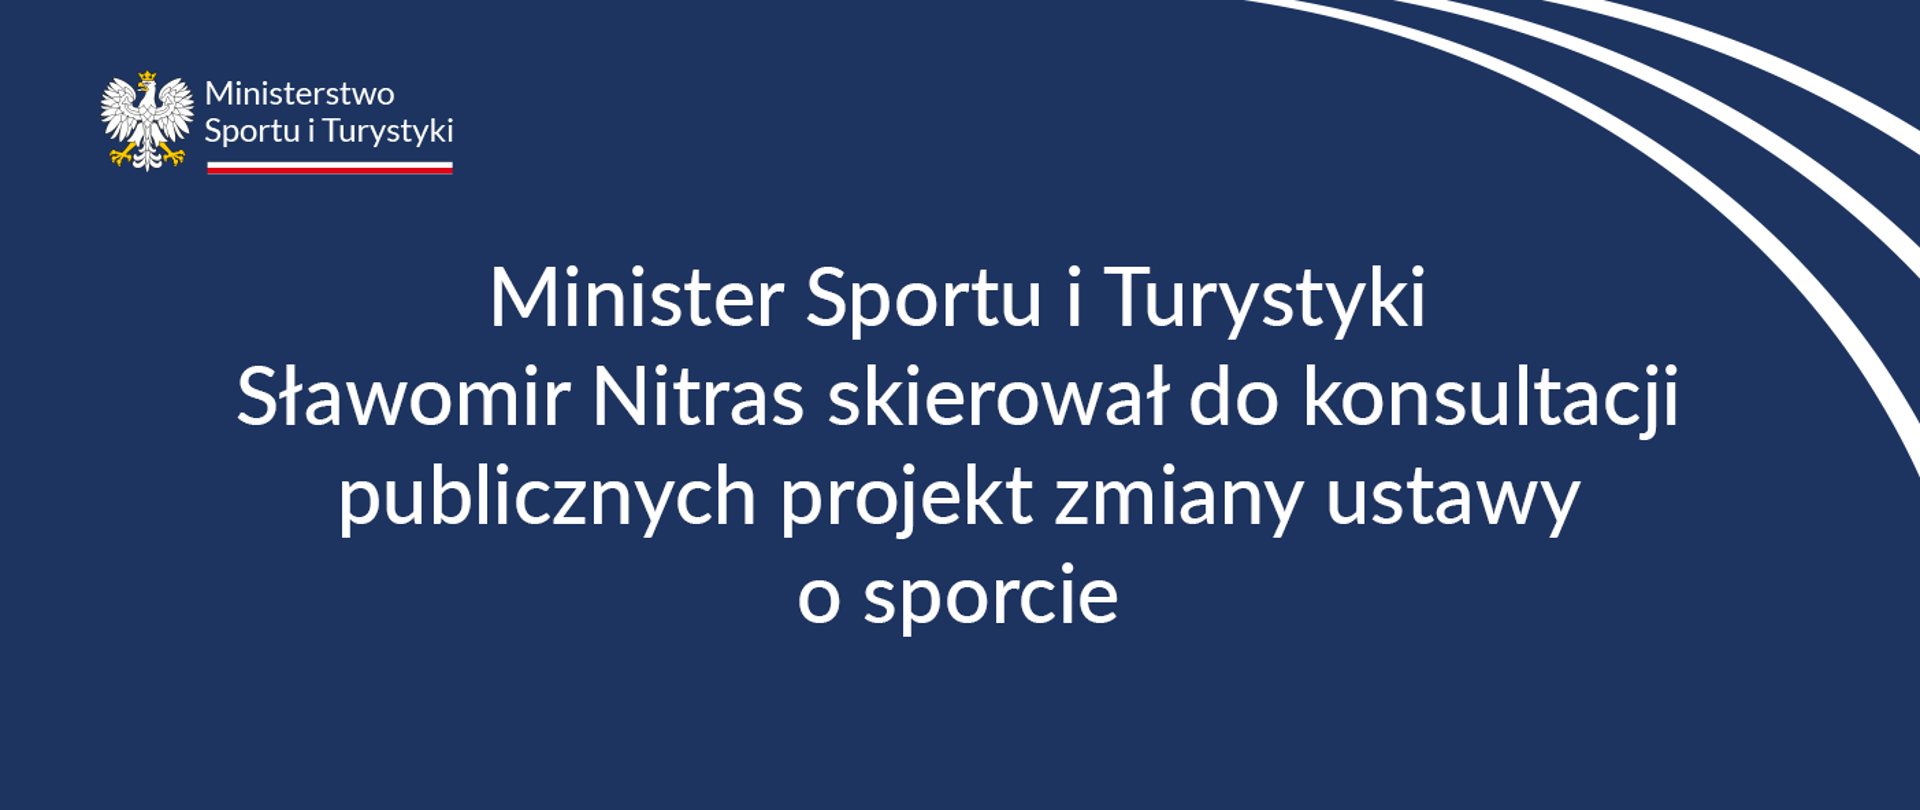 Granatowa grafika z białym napisem: Minister Sportu i Turystyki Sławomir Nitras skierował do konsultacji publicznych projekt zmiany ustawy o sporcie